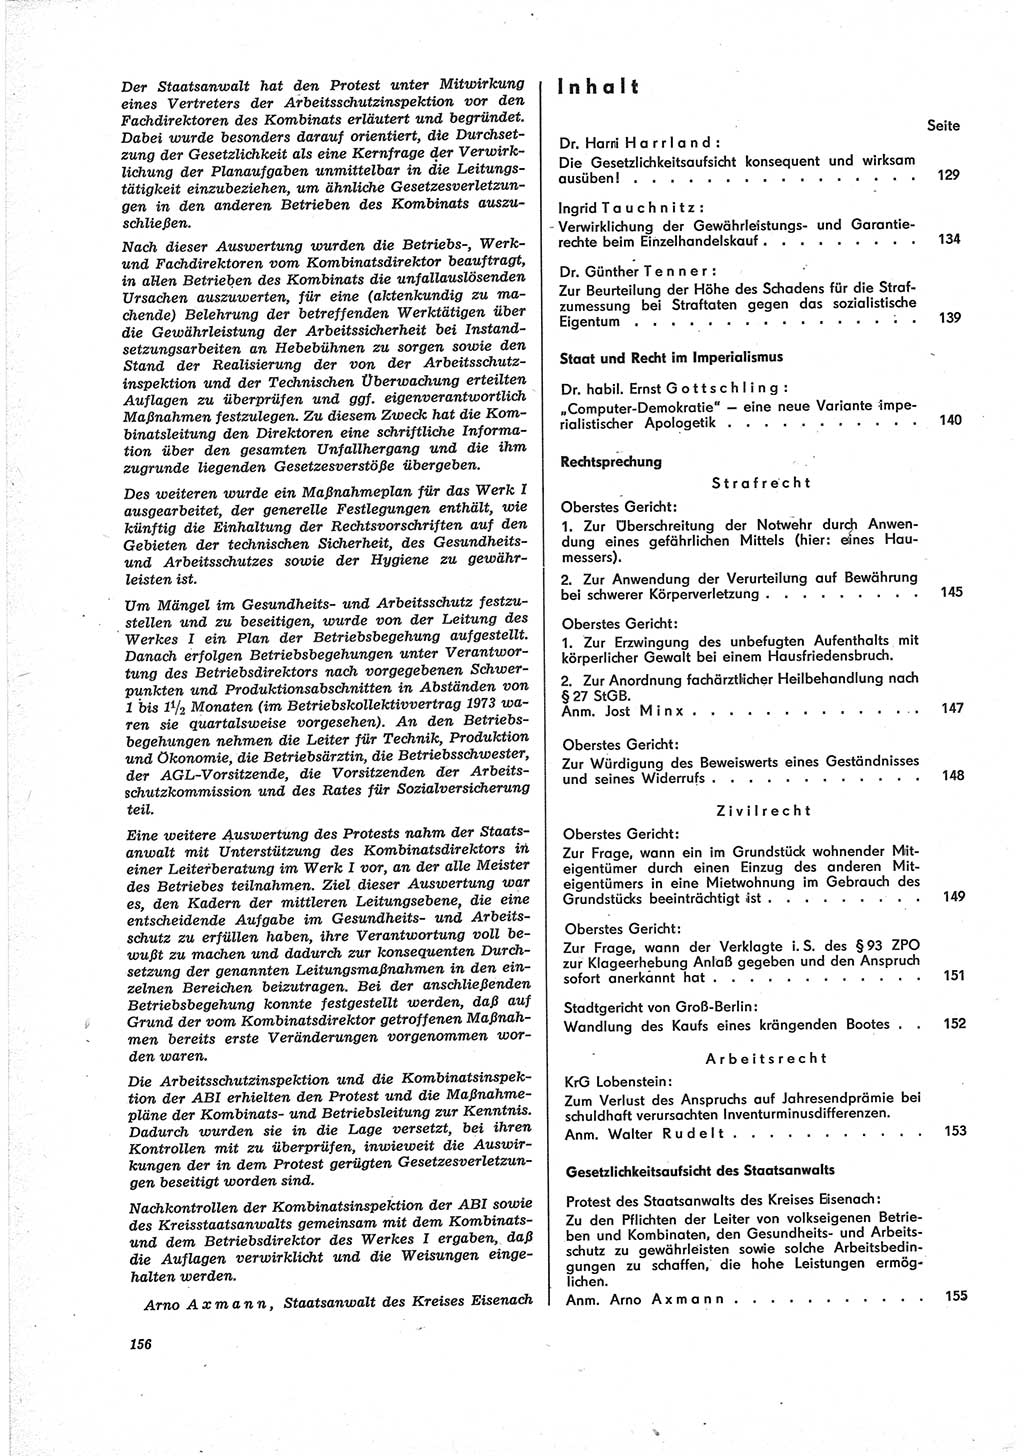 Neue Justiz (NJ), Zeitschrift für Recht und Rechtswissenschaft [Deutsche Demokratische Republik (DDR)], 28. Jahrgang 1974, Seite 156 (NJ DDR 1974, S. 156)